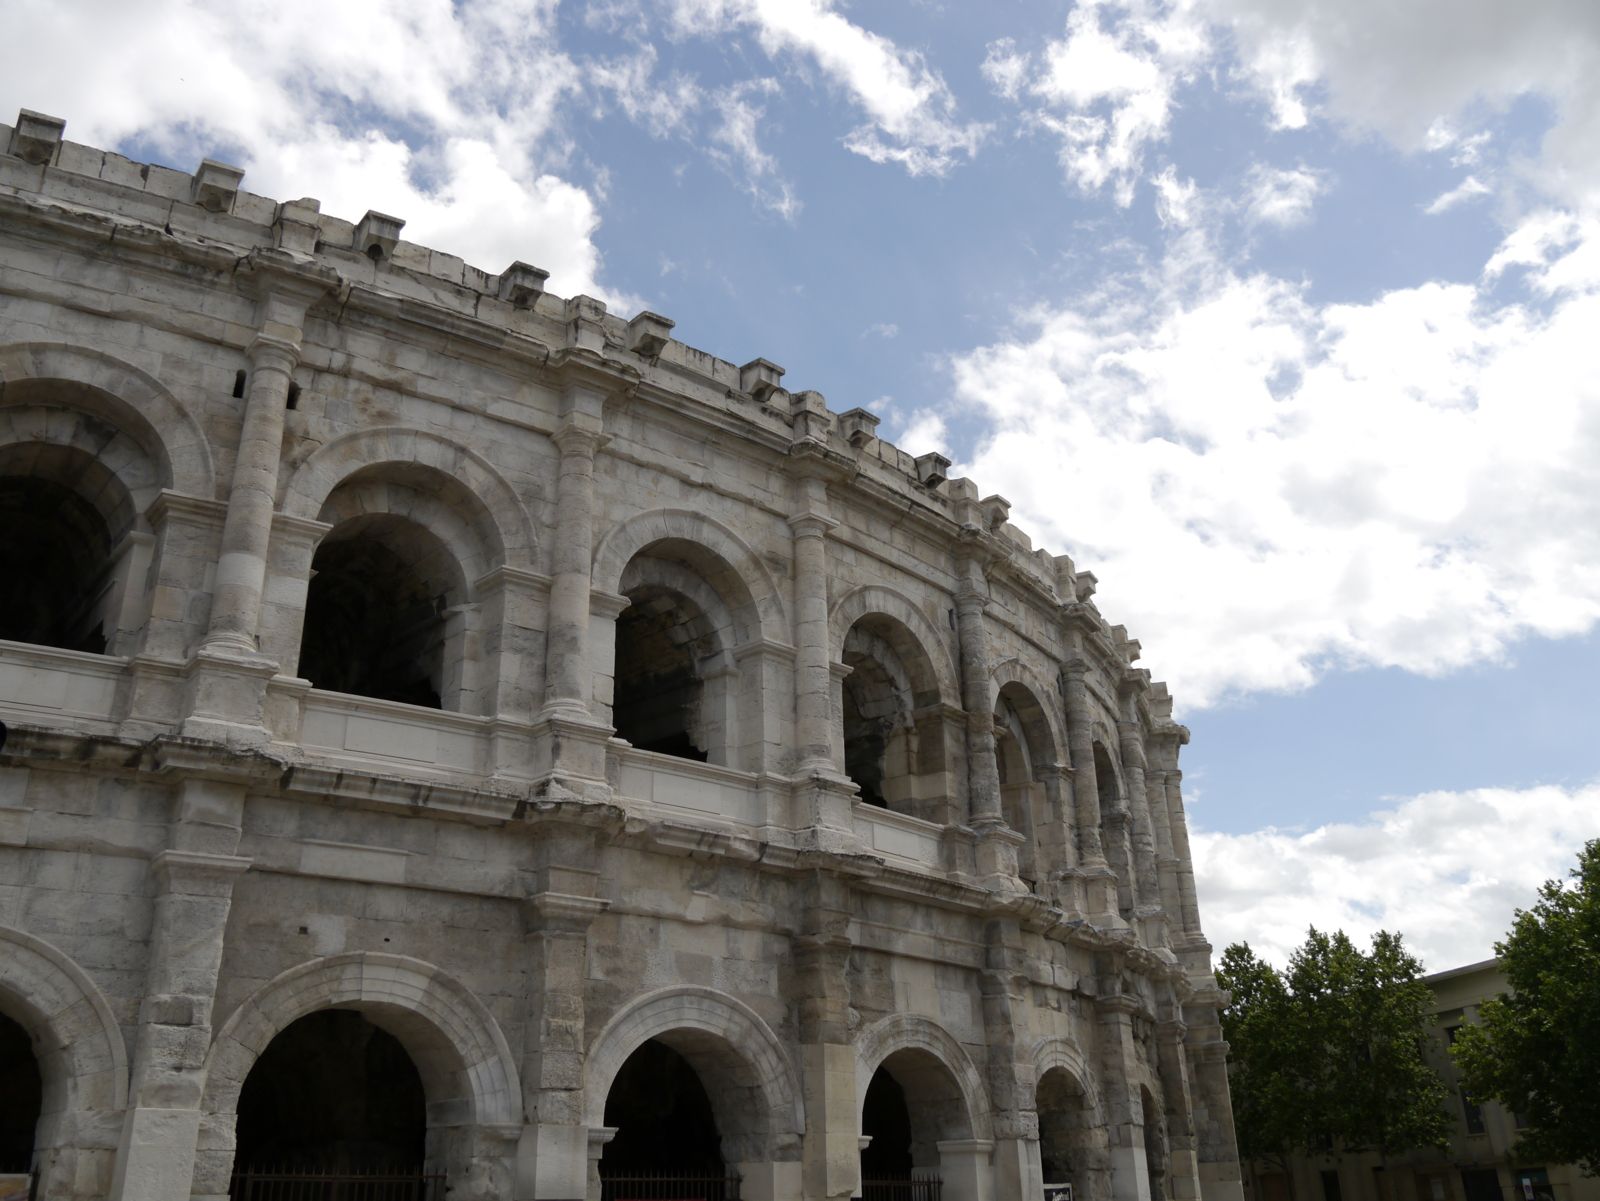 La façade extérieure des arènes de Nîmes se détache sur un ciel bleu légèrement nuageux.